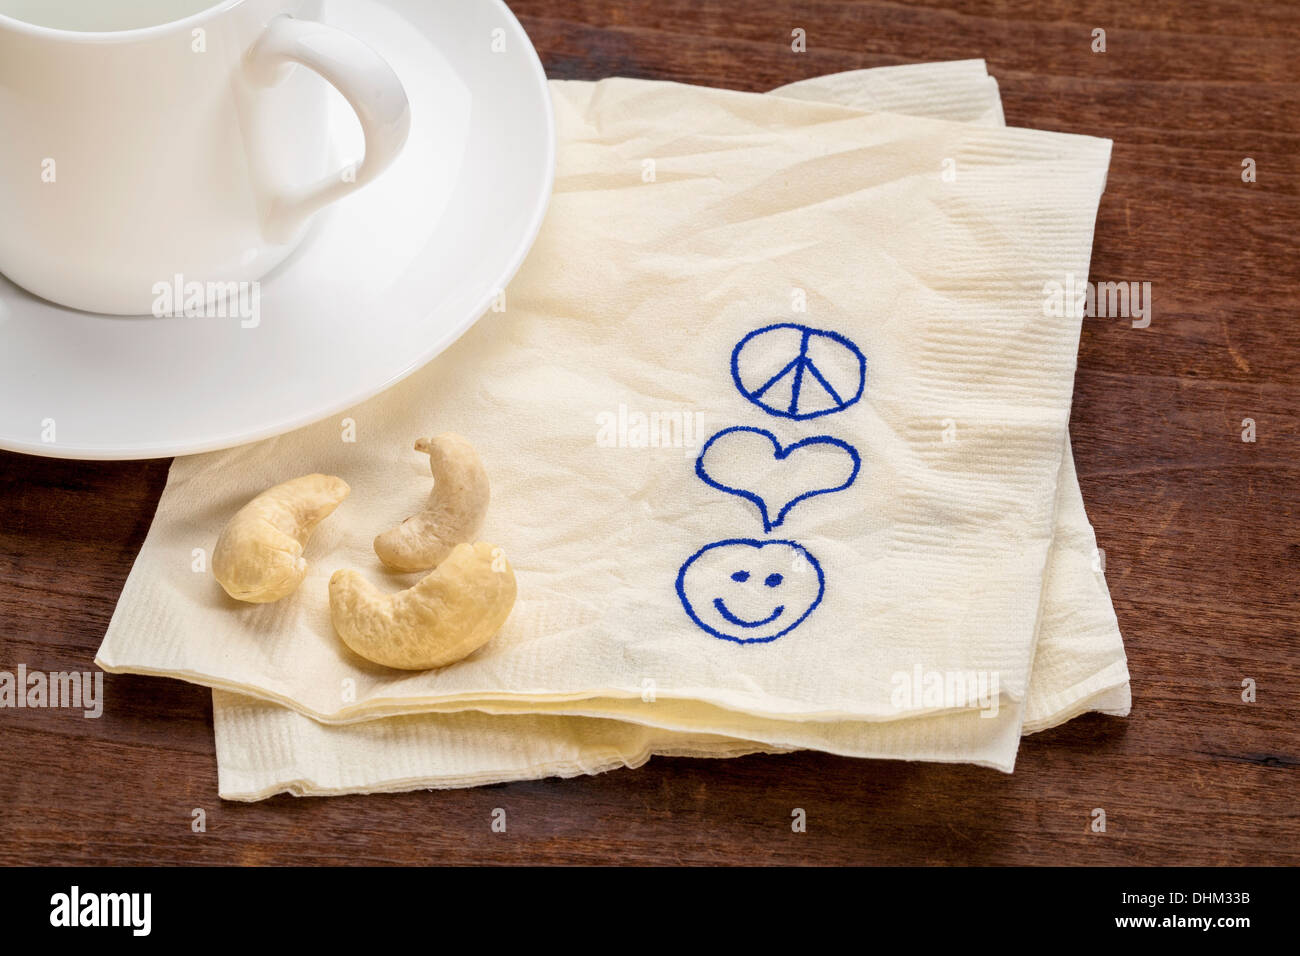 Pace amore e felicità simboli disegnò su un tovagliolo con una tazza di caffè Foto Stock